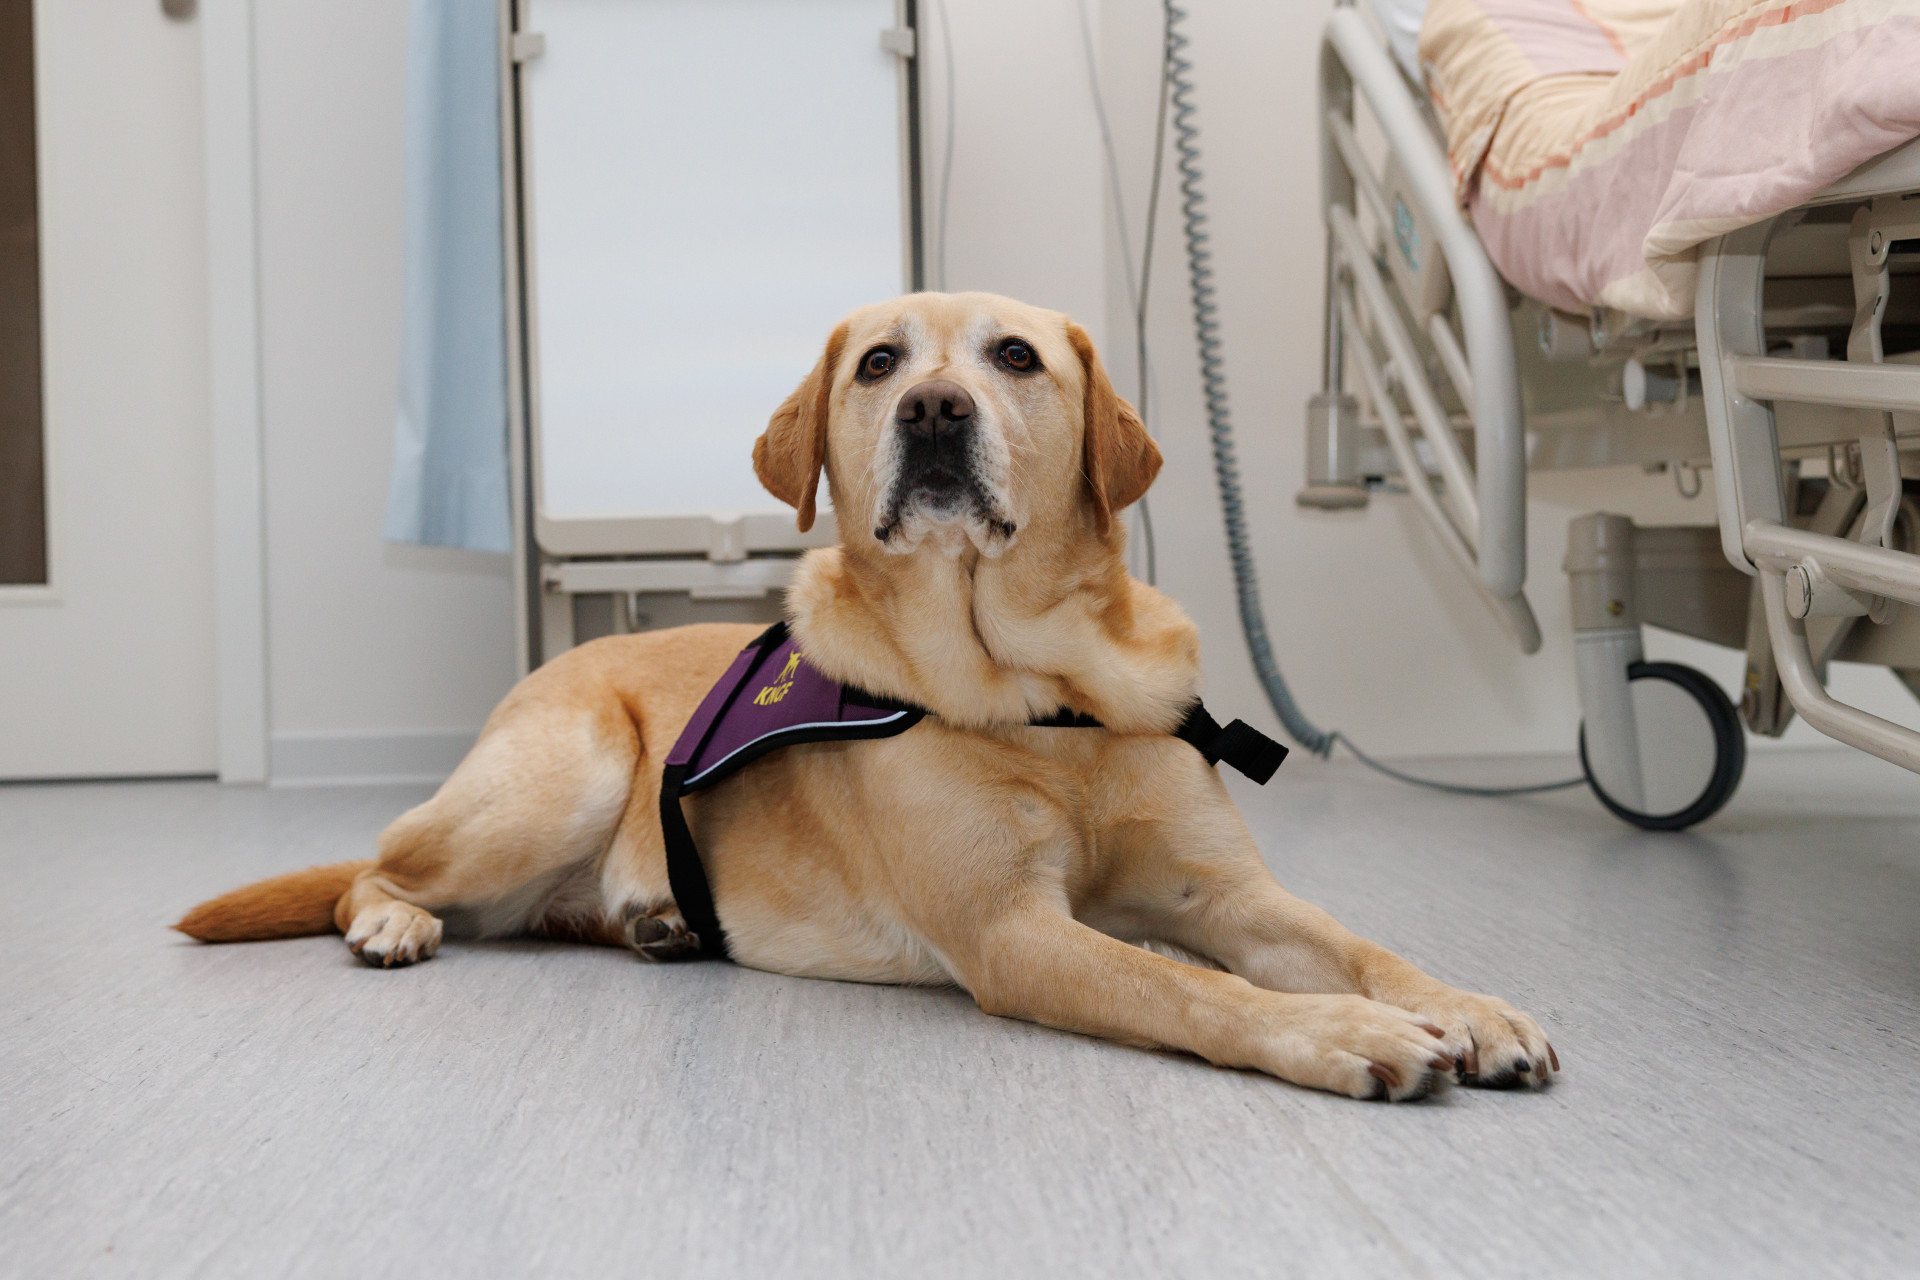 blonde hond in kngf-hesje ligt op de grond naast ziekenhuisbed